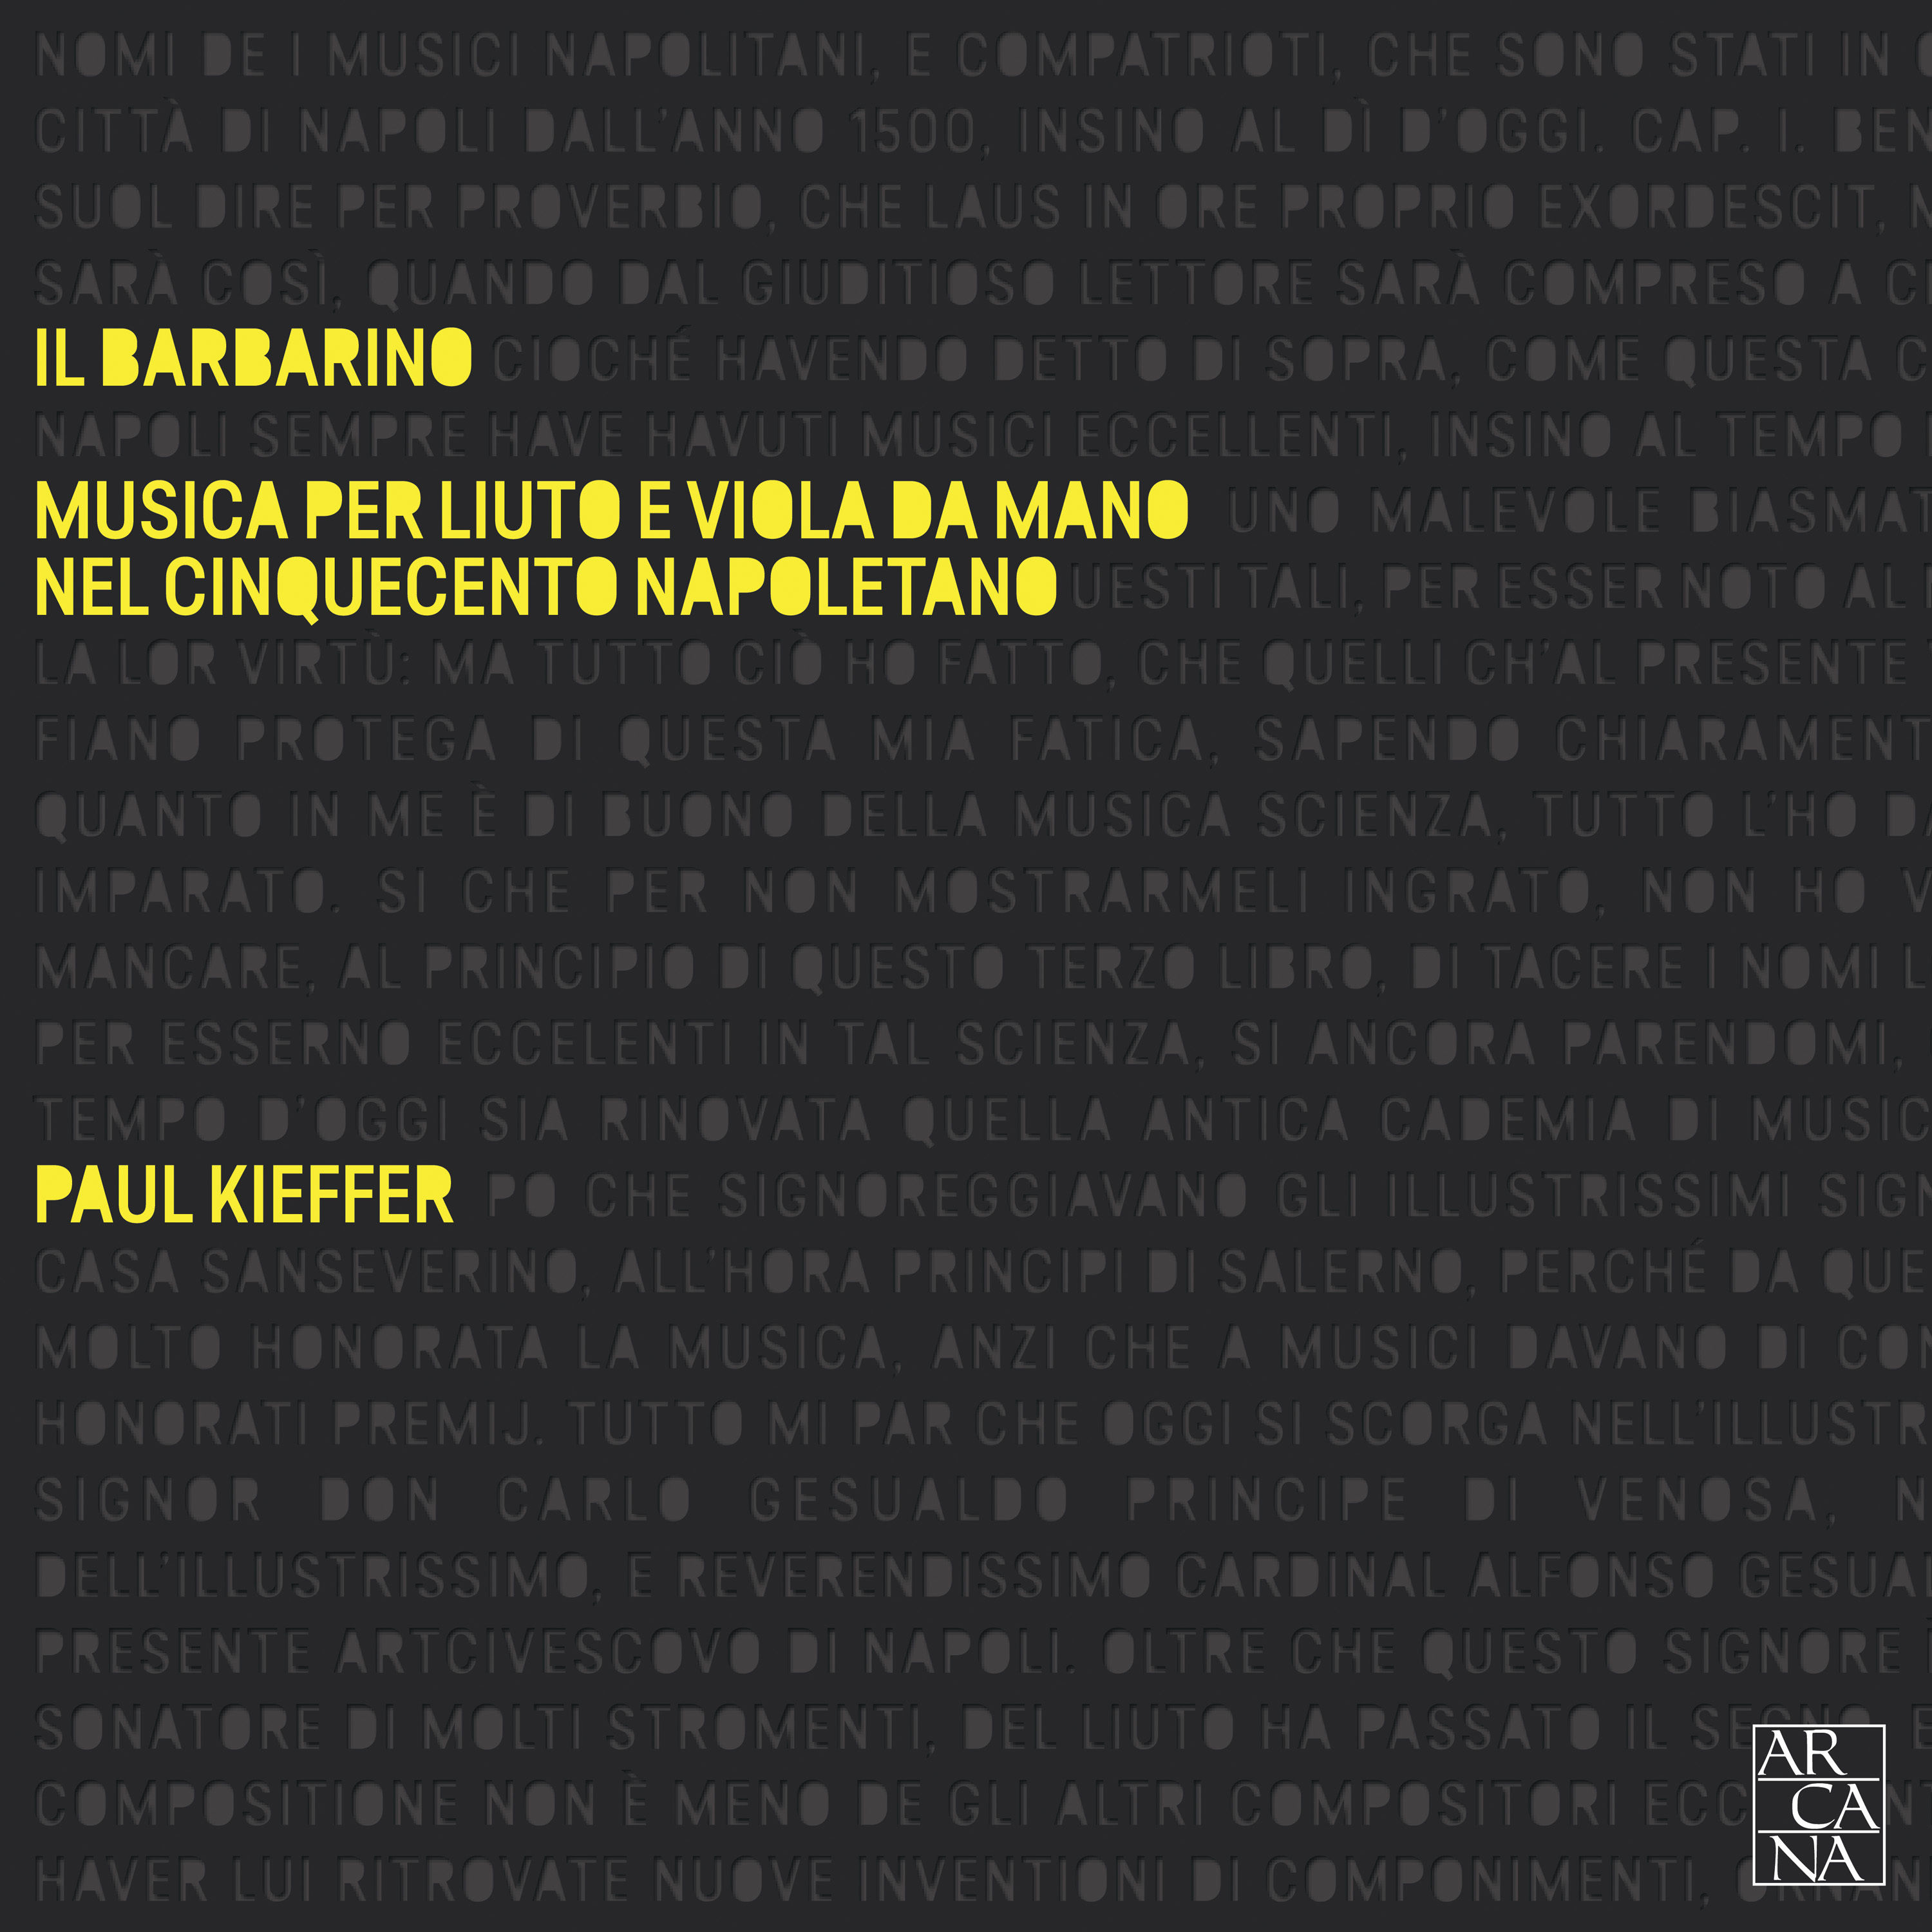 Lute - il Barbarino - Musica per liuto nel cinquecento napoletano - Paul Kieffer